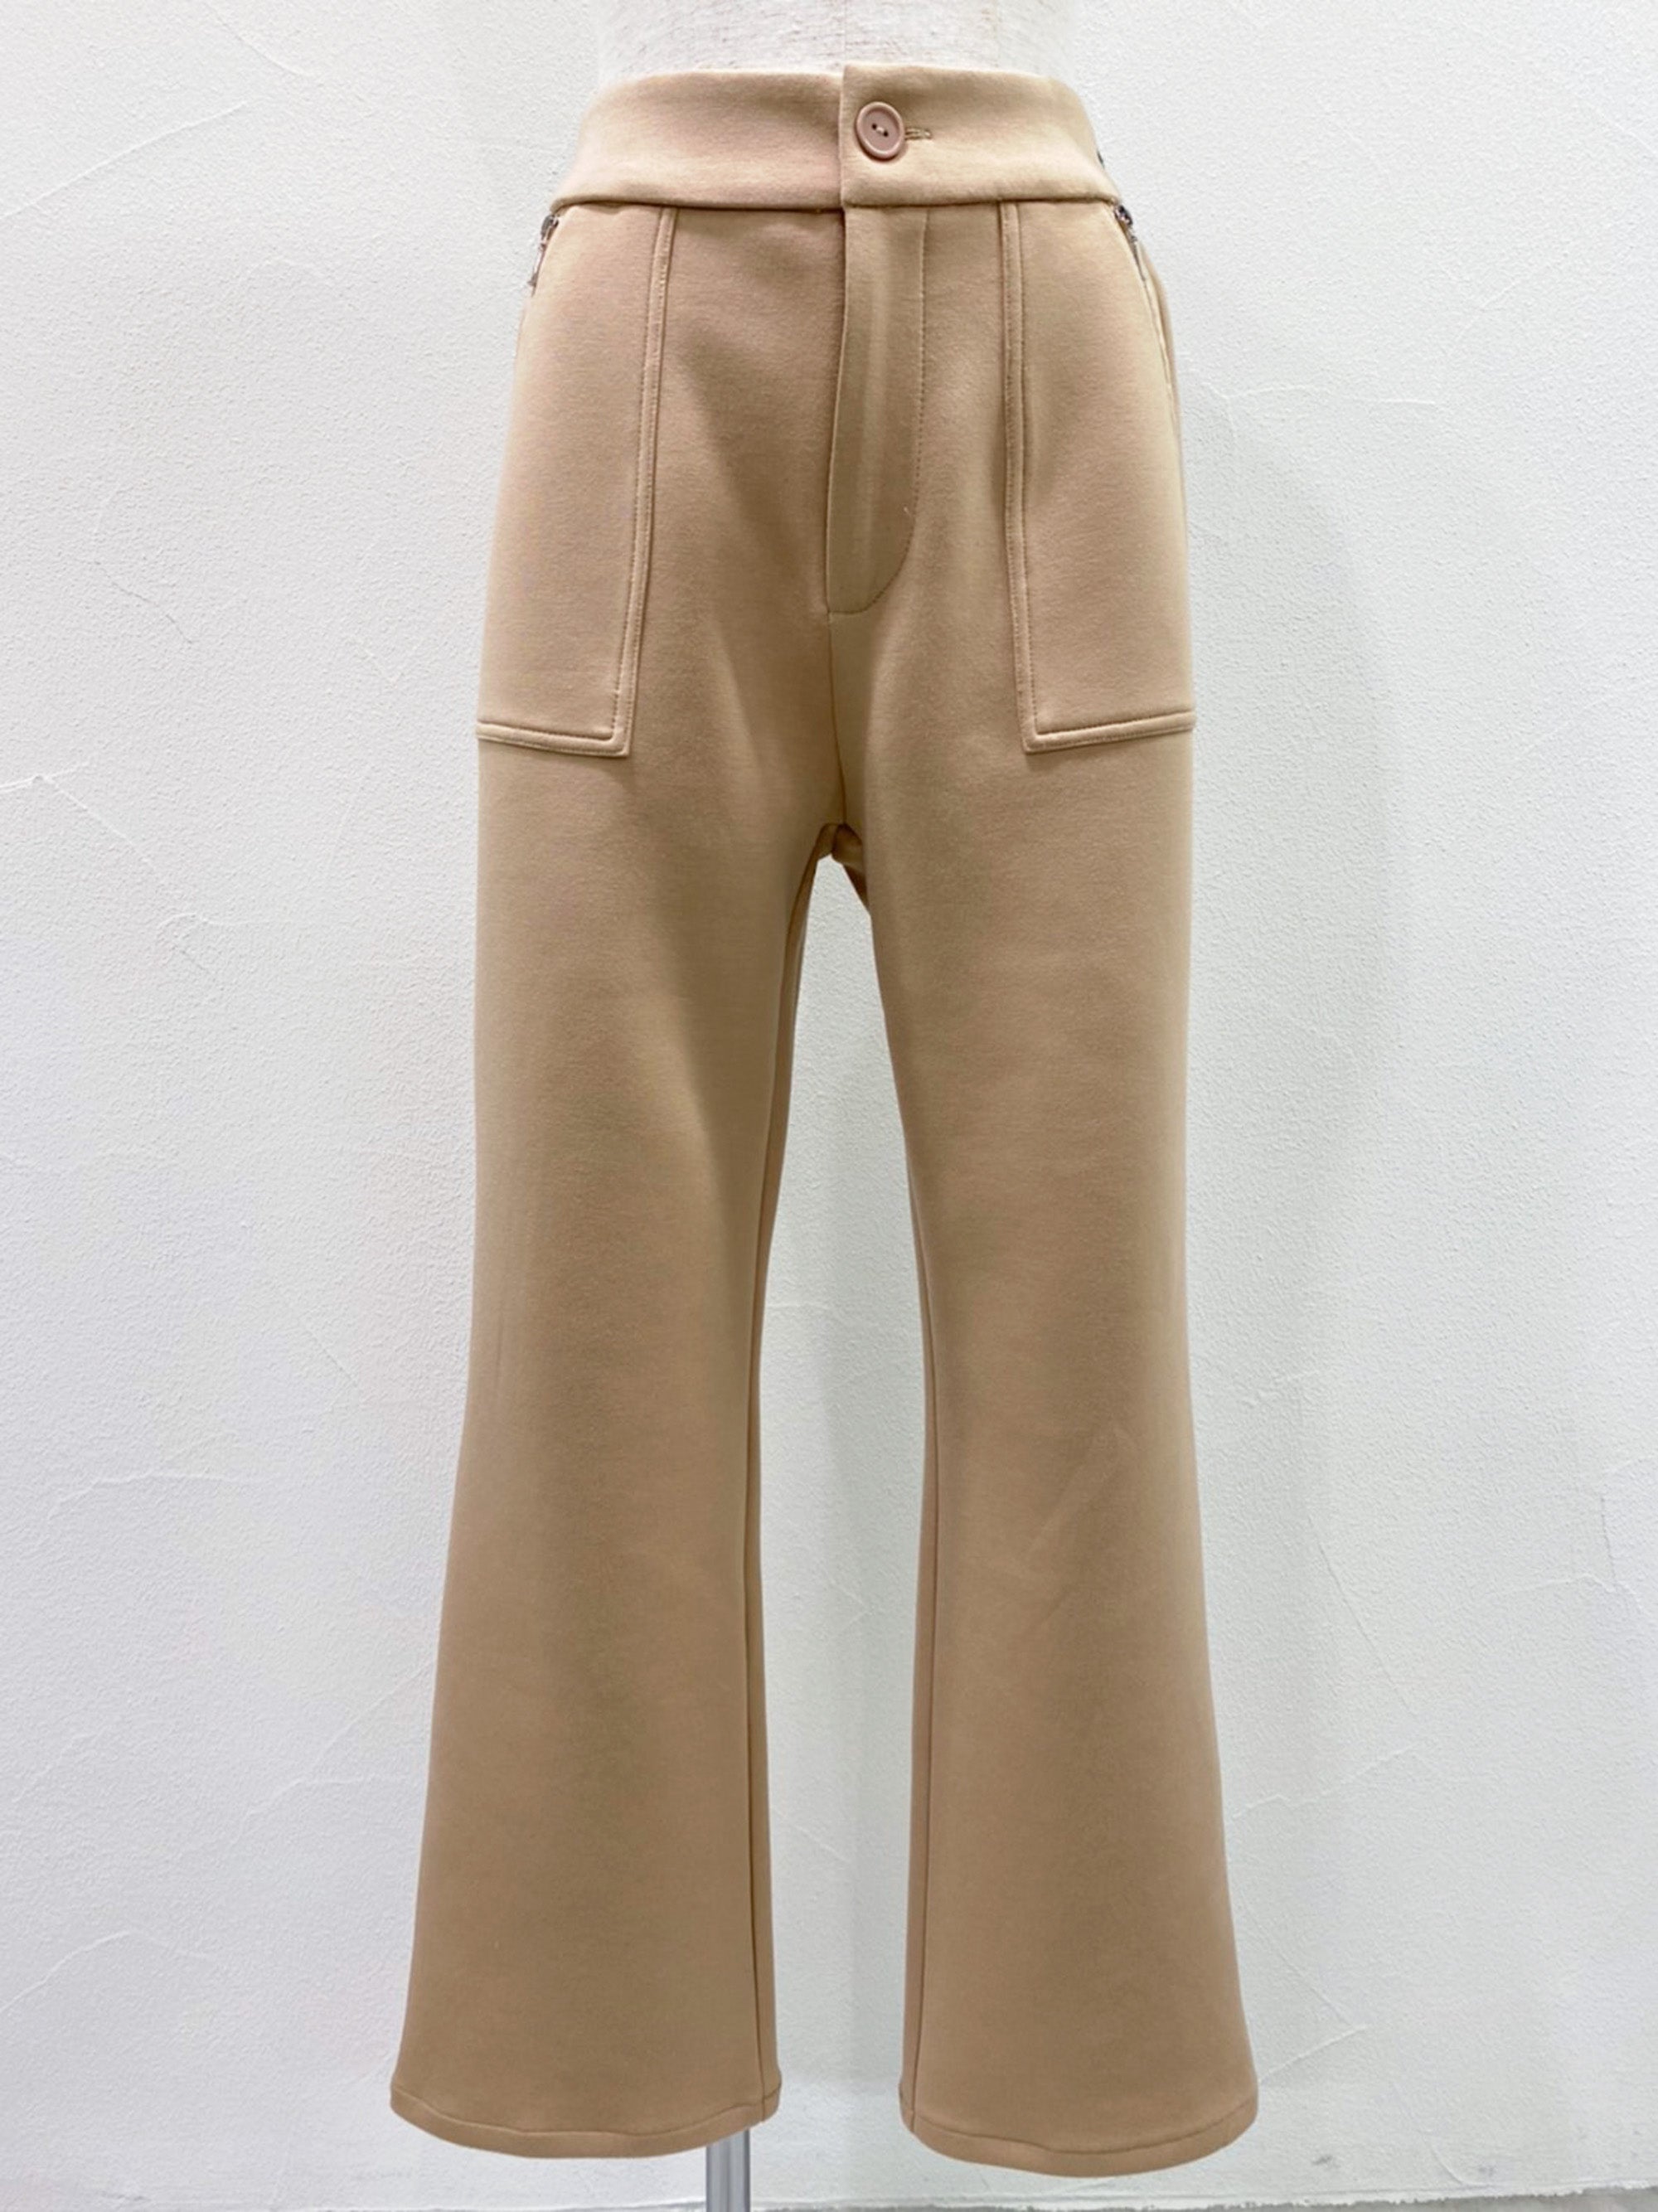 cardboard knit semi flare pants